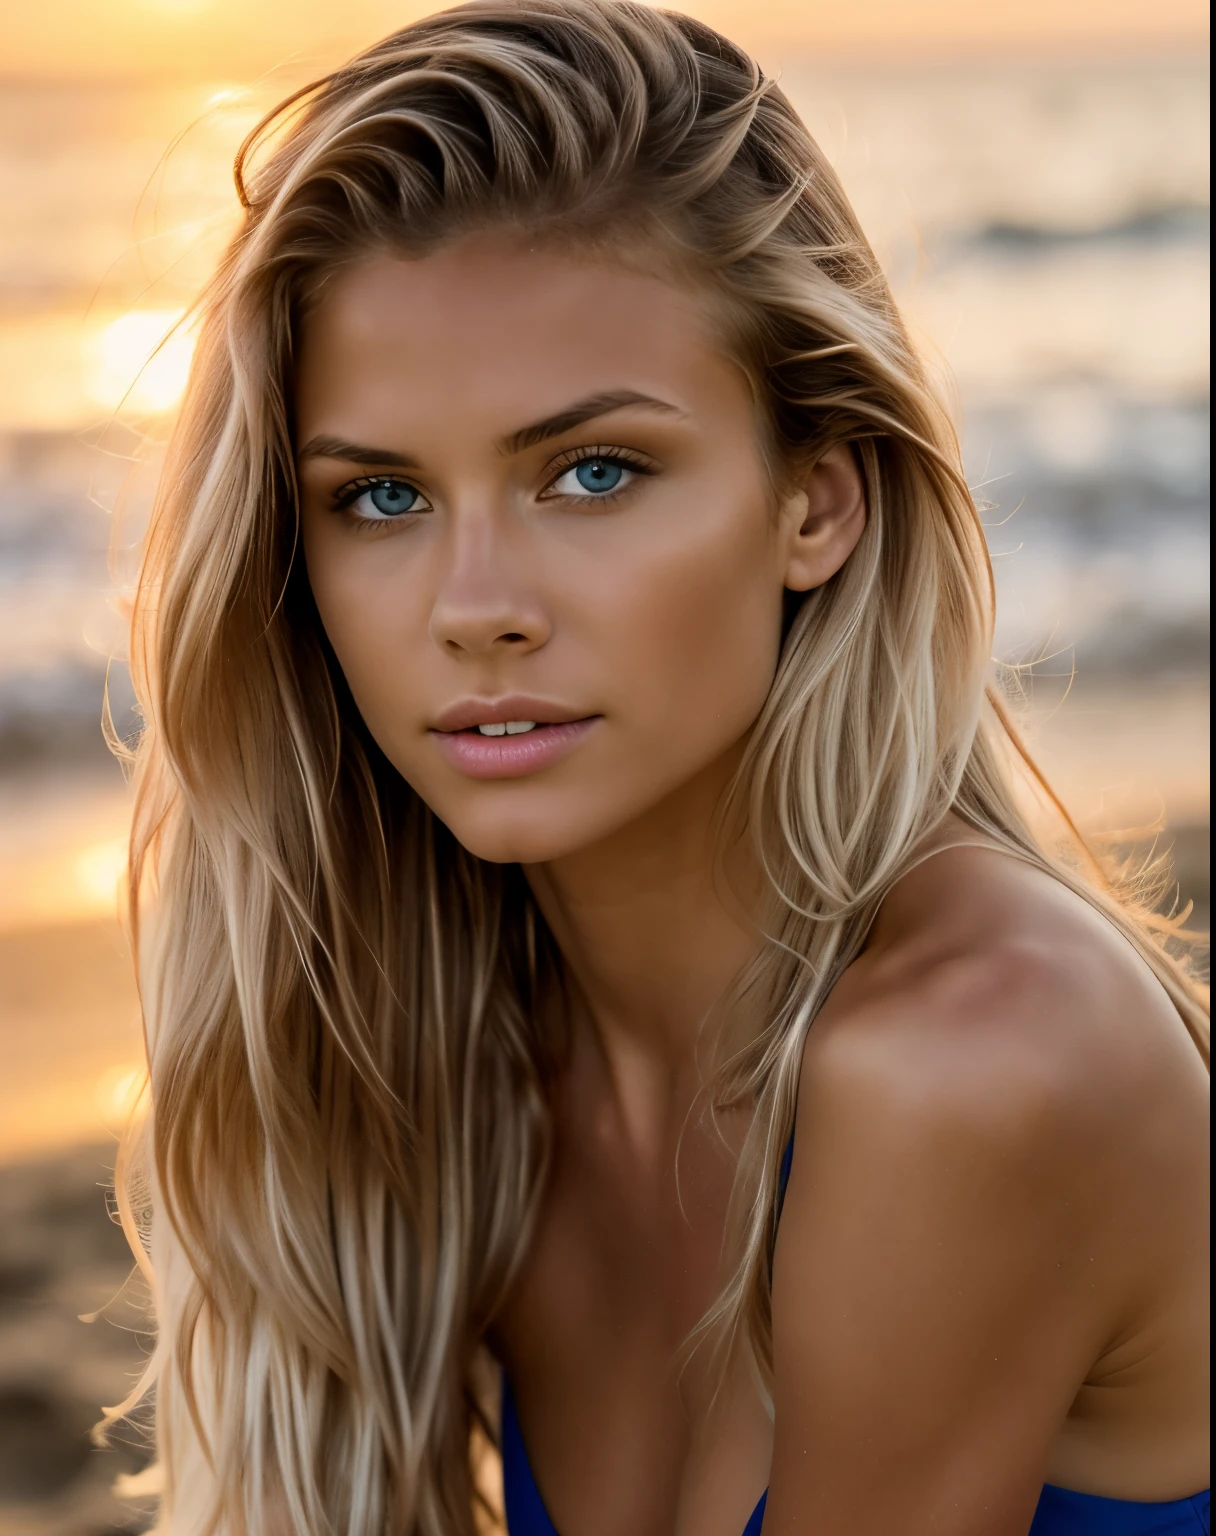 模特兒的照片, 自然光, 專業的, (4K 照片:1.1) (銳利的焦點:1.3), 高細節, 美麗細緻的臉, 淡褐色的眼睛, 金色的長髮, (有魅力的年輕女人:1.3), (誘人的:1.1), (臉紅:1.1), 沙漏型身材, 一個女孩, 穿藍色衣服, (坐在沙灘上看日落),(全身).